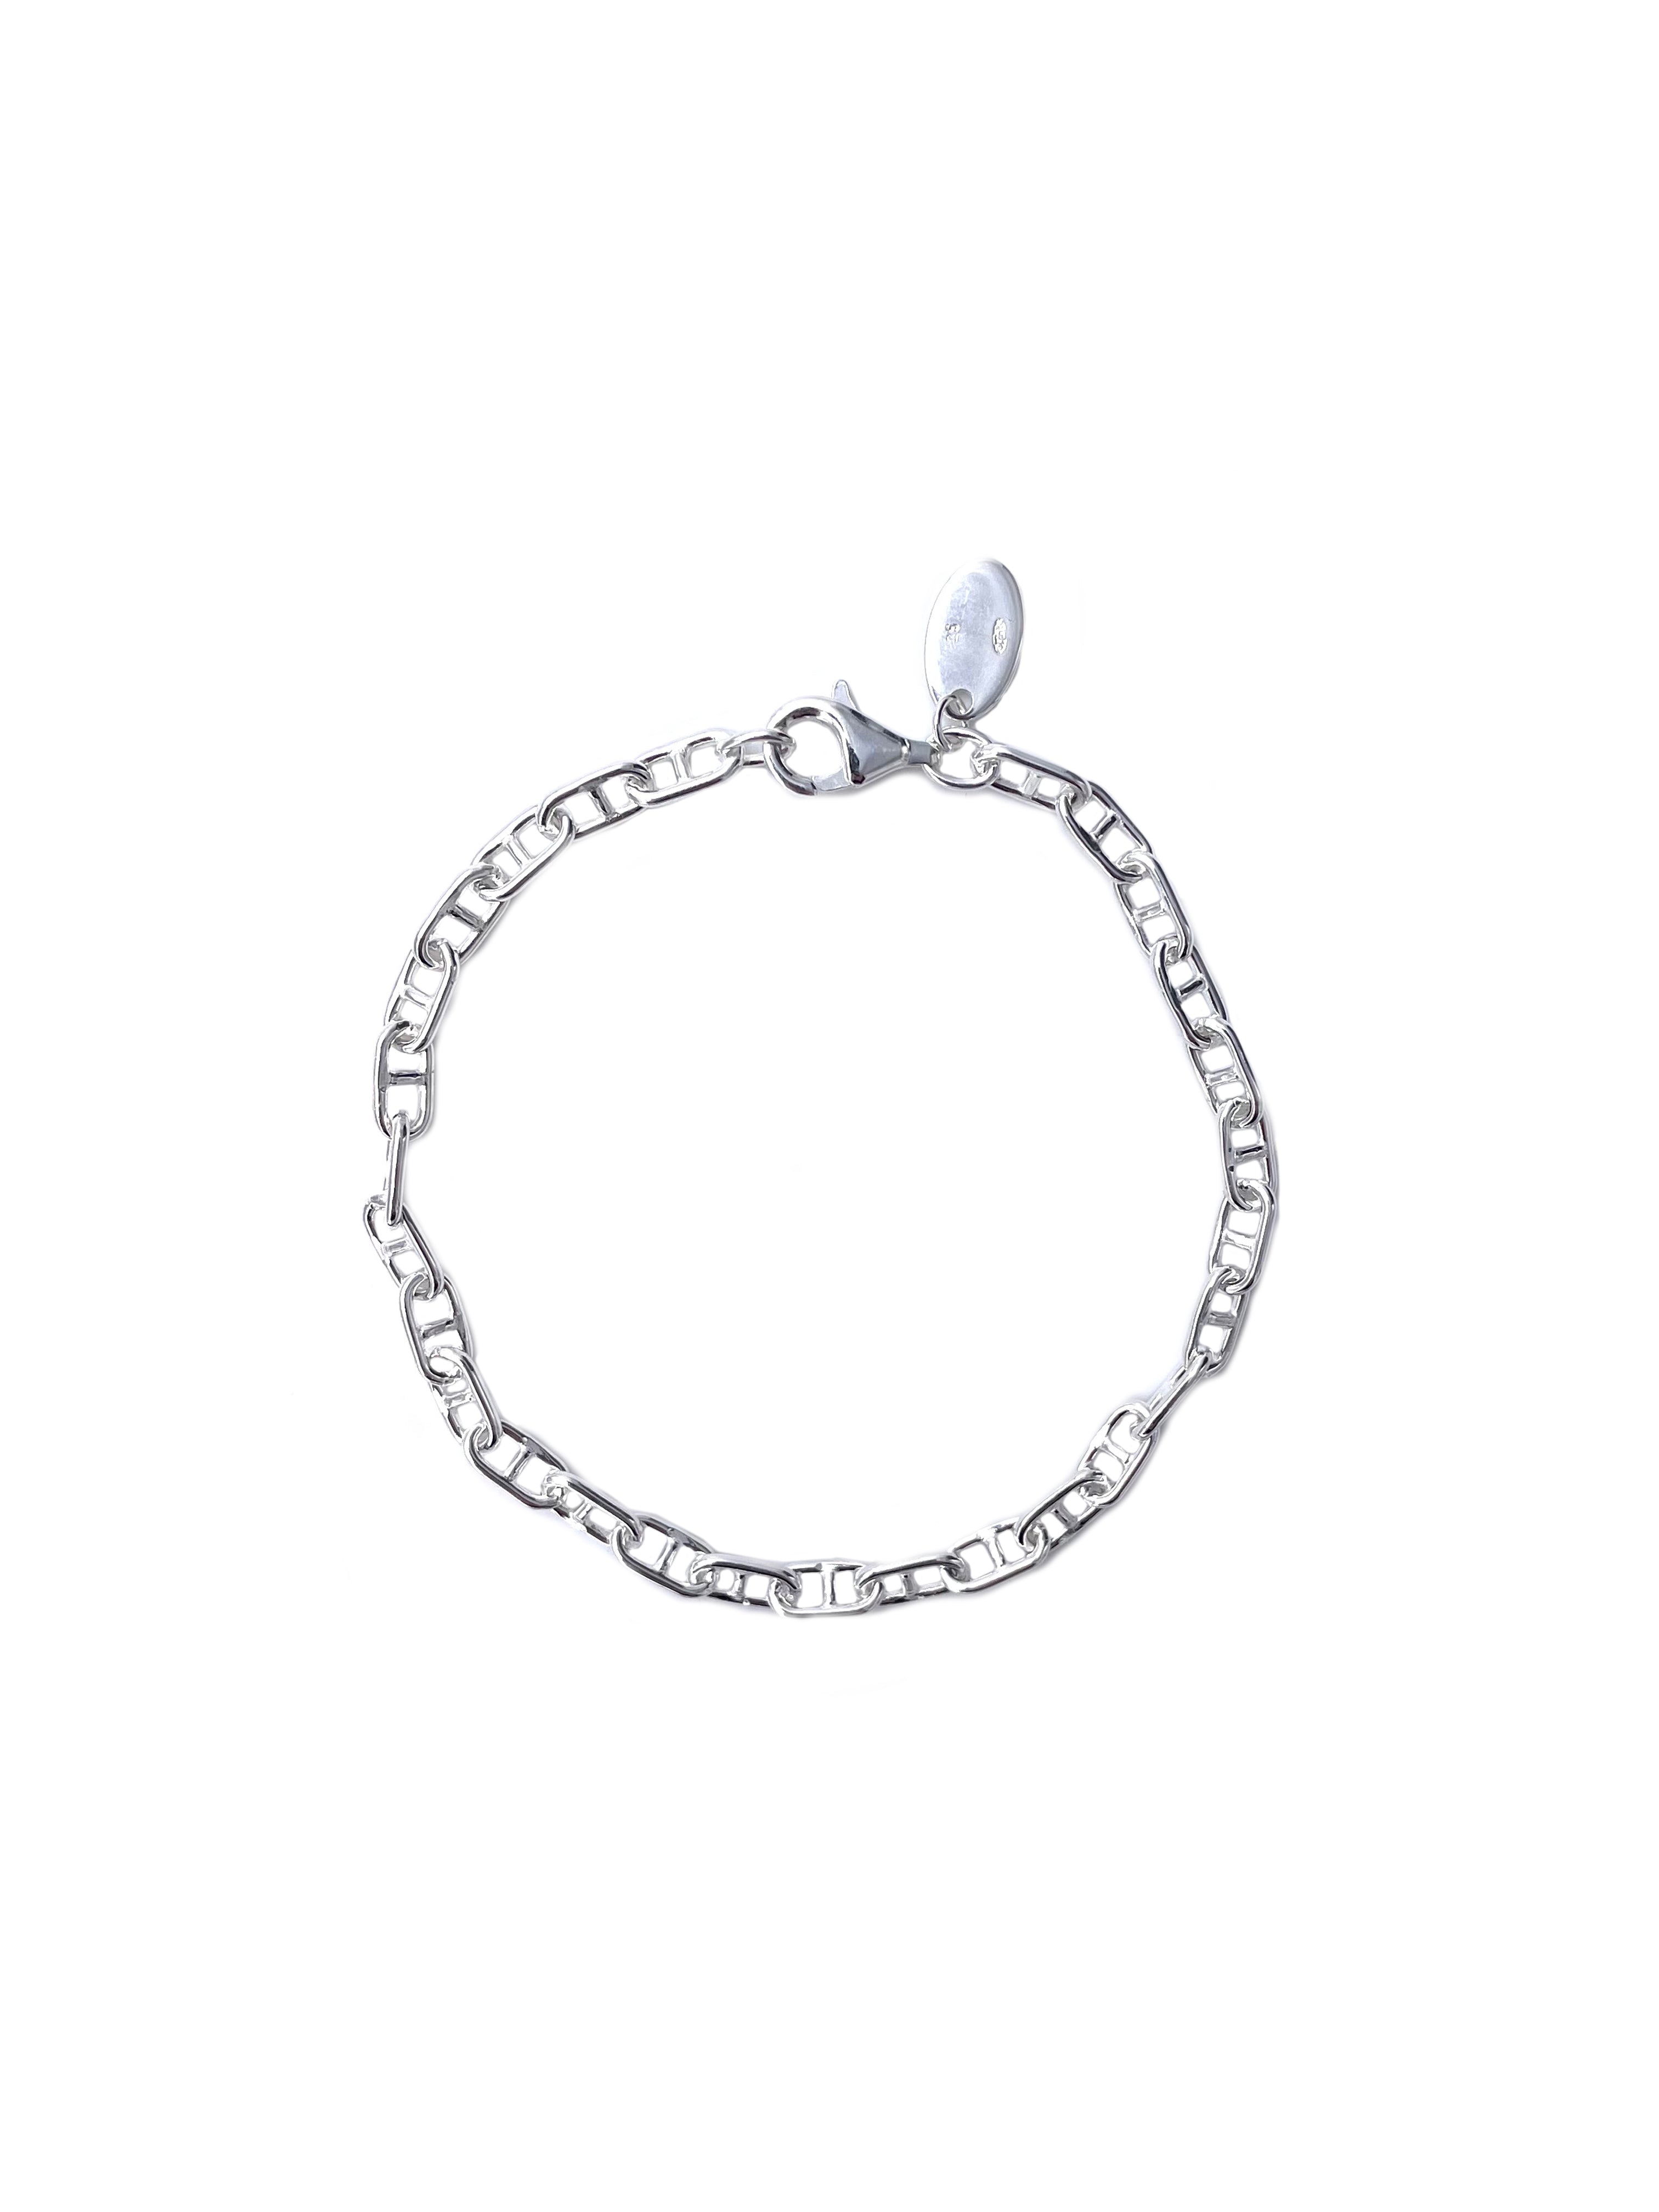  Bracelet Chaine Nº4 Argent